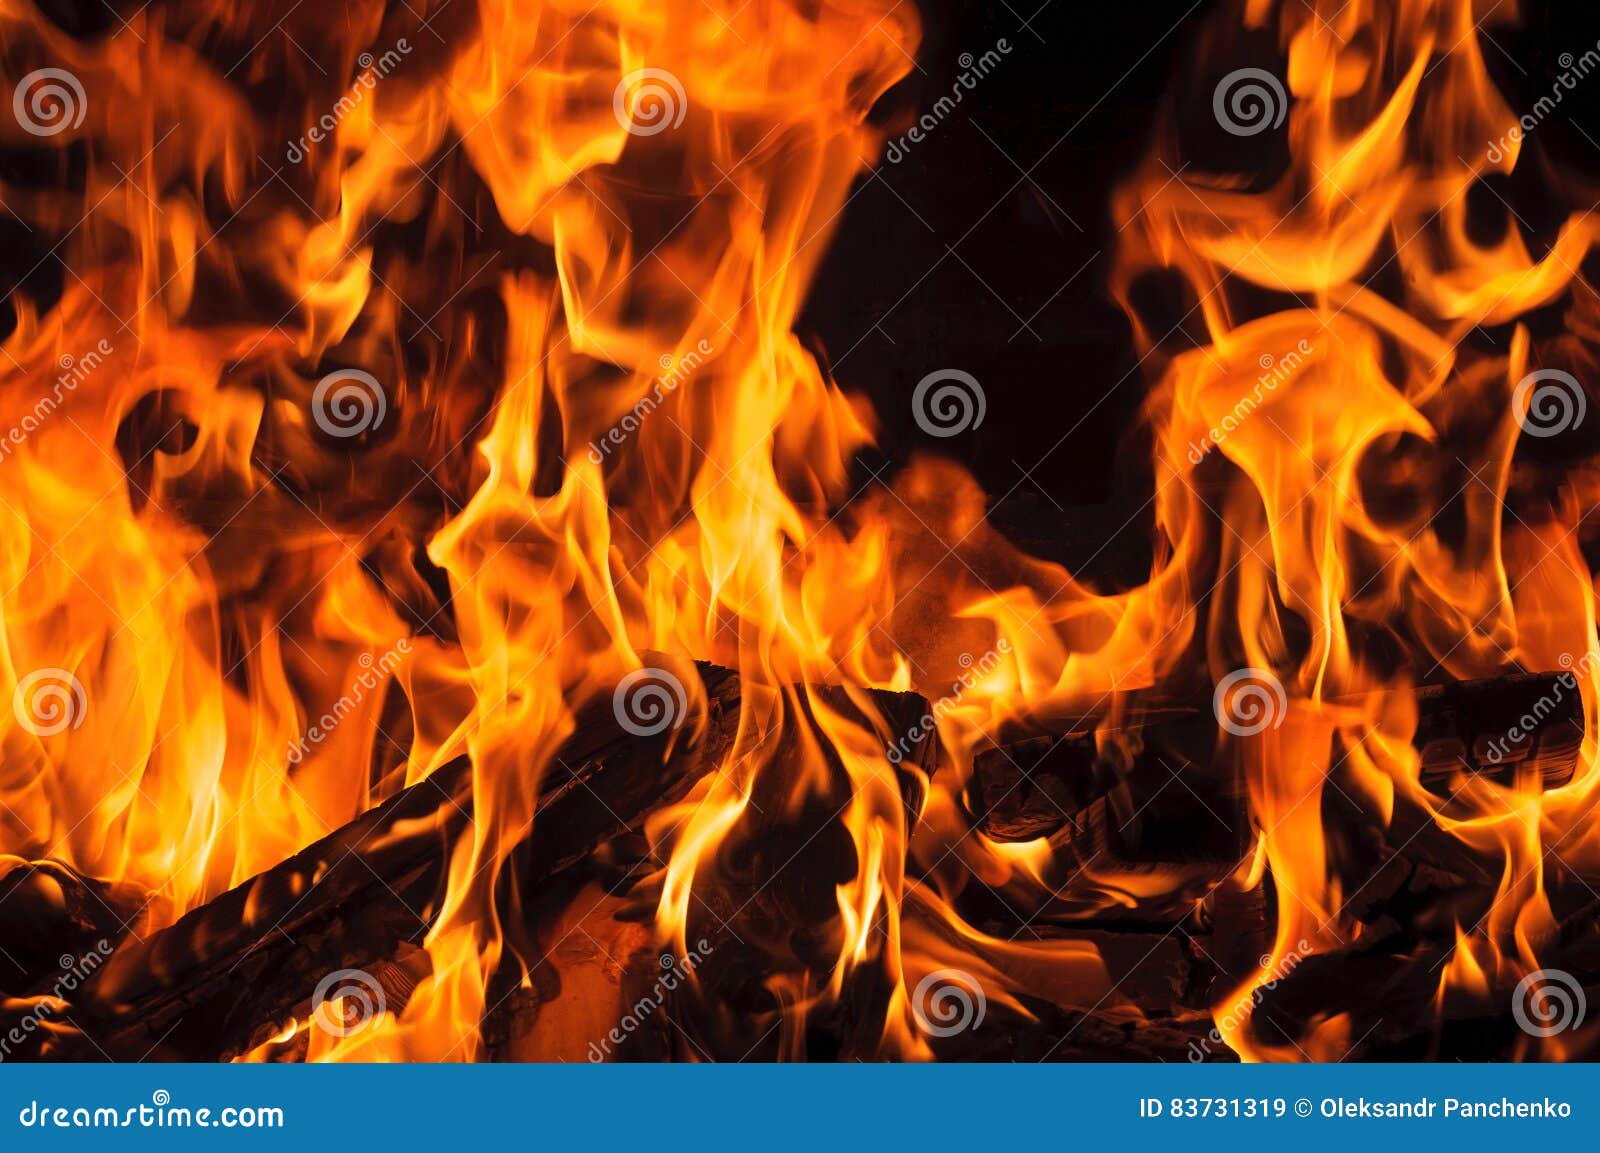 Cierre de fuego y llamas Pared PosterCasa Pared Arte Imagen de decoración del hogar